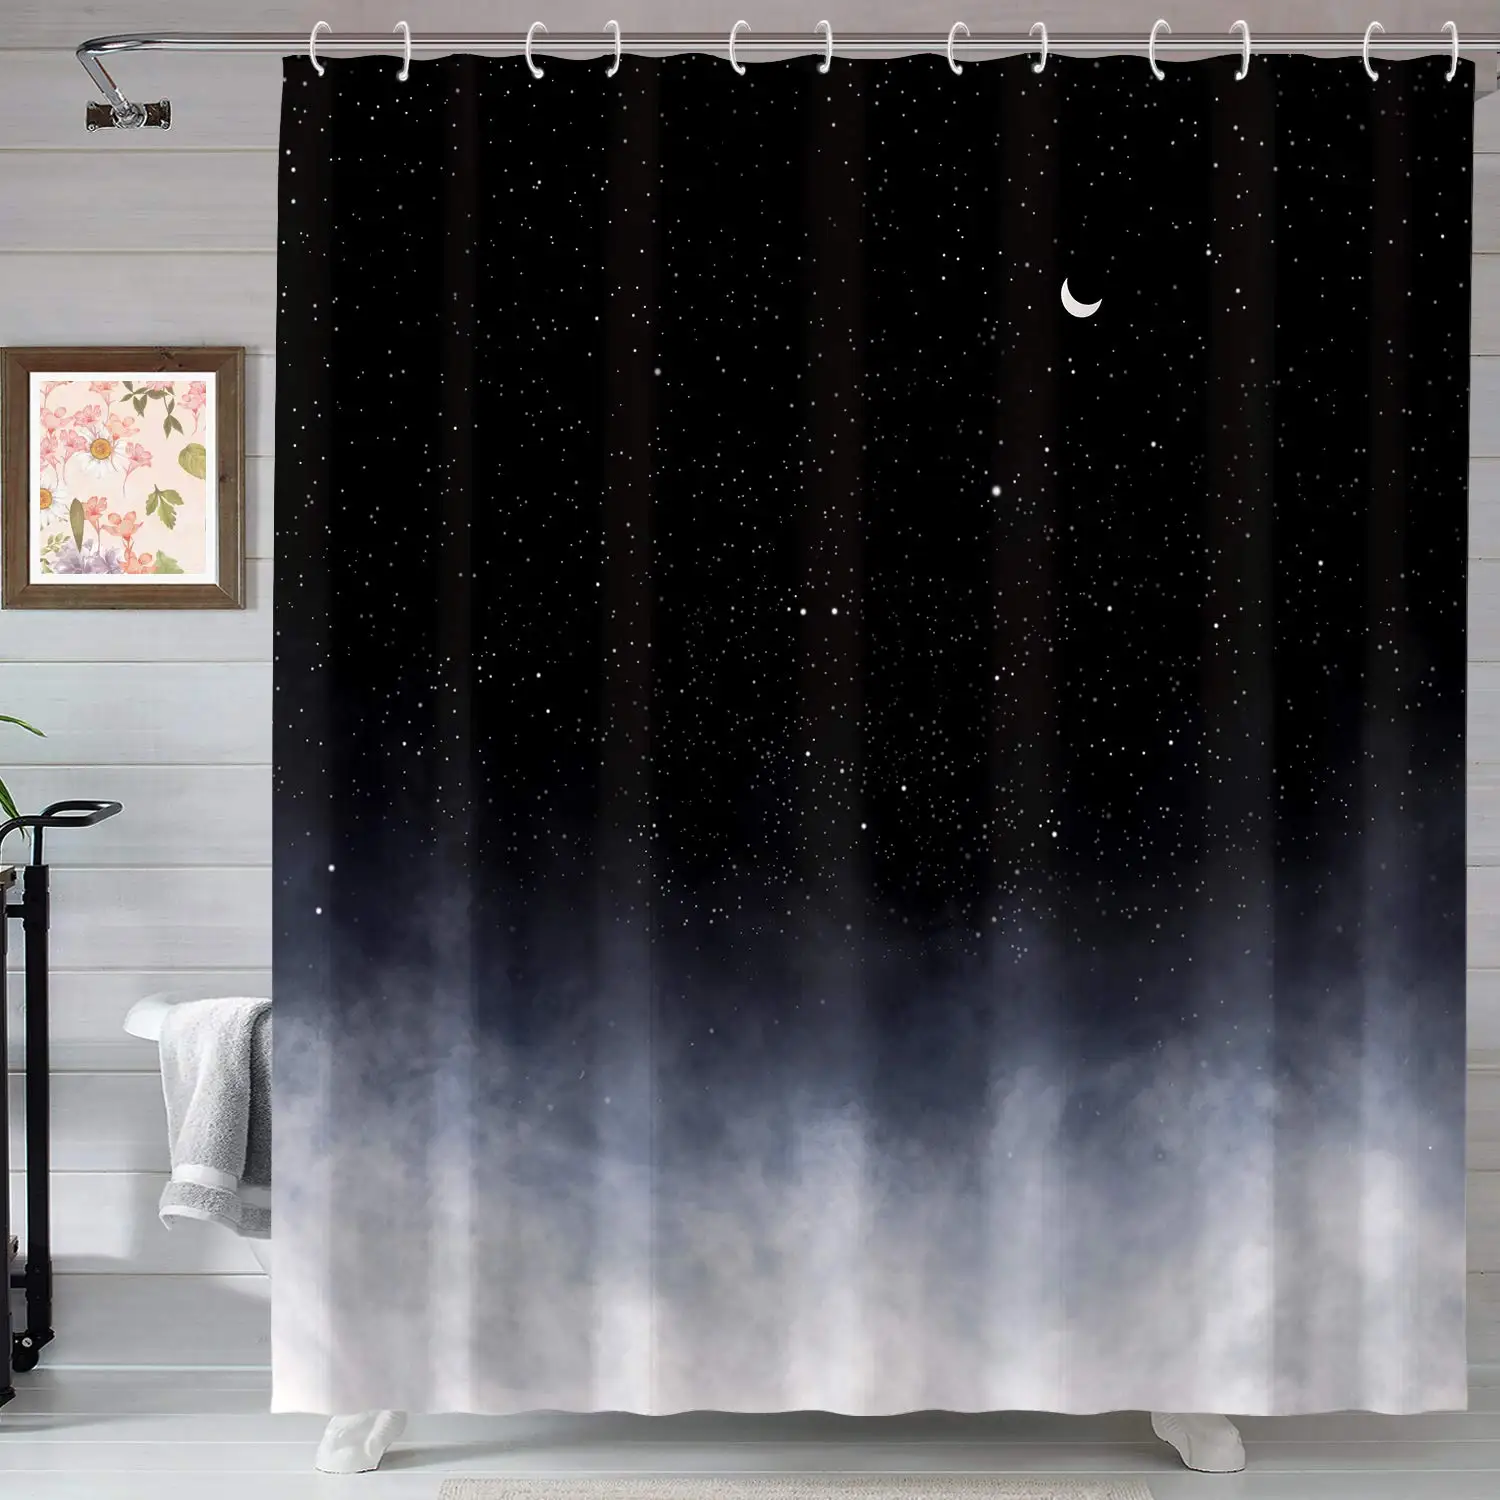 

Черная занавеска для душа звезды и новая луна фантазия галактика занавески для ванной комнаты занавески для душа с ночным звездным небом декоративные комплекты для ванны